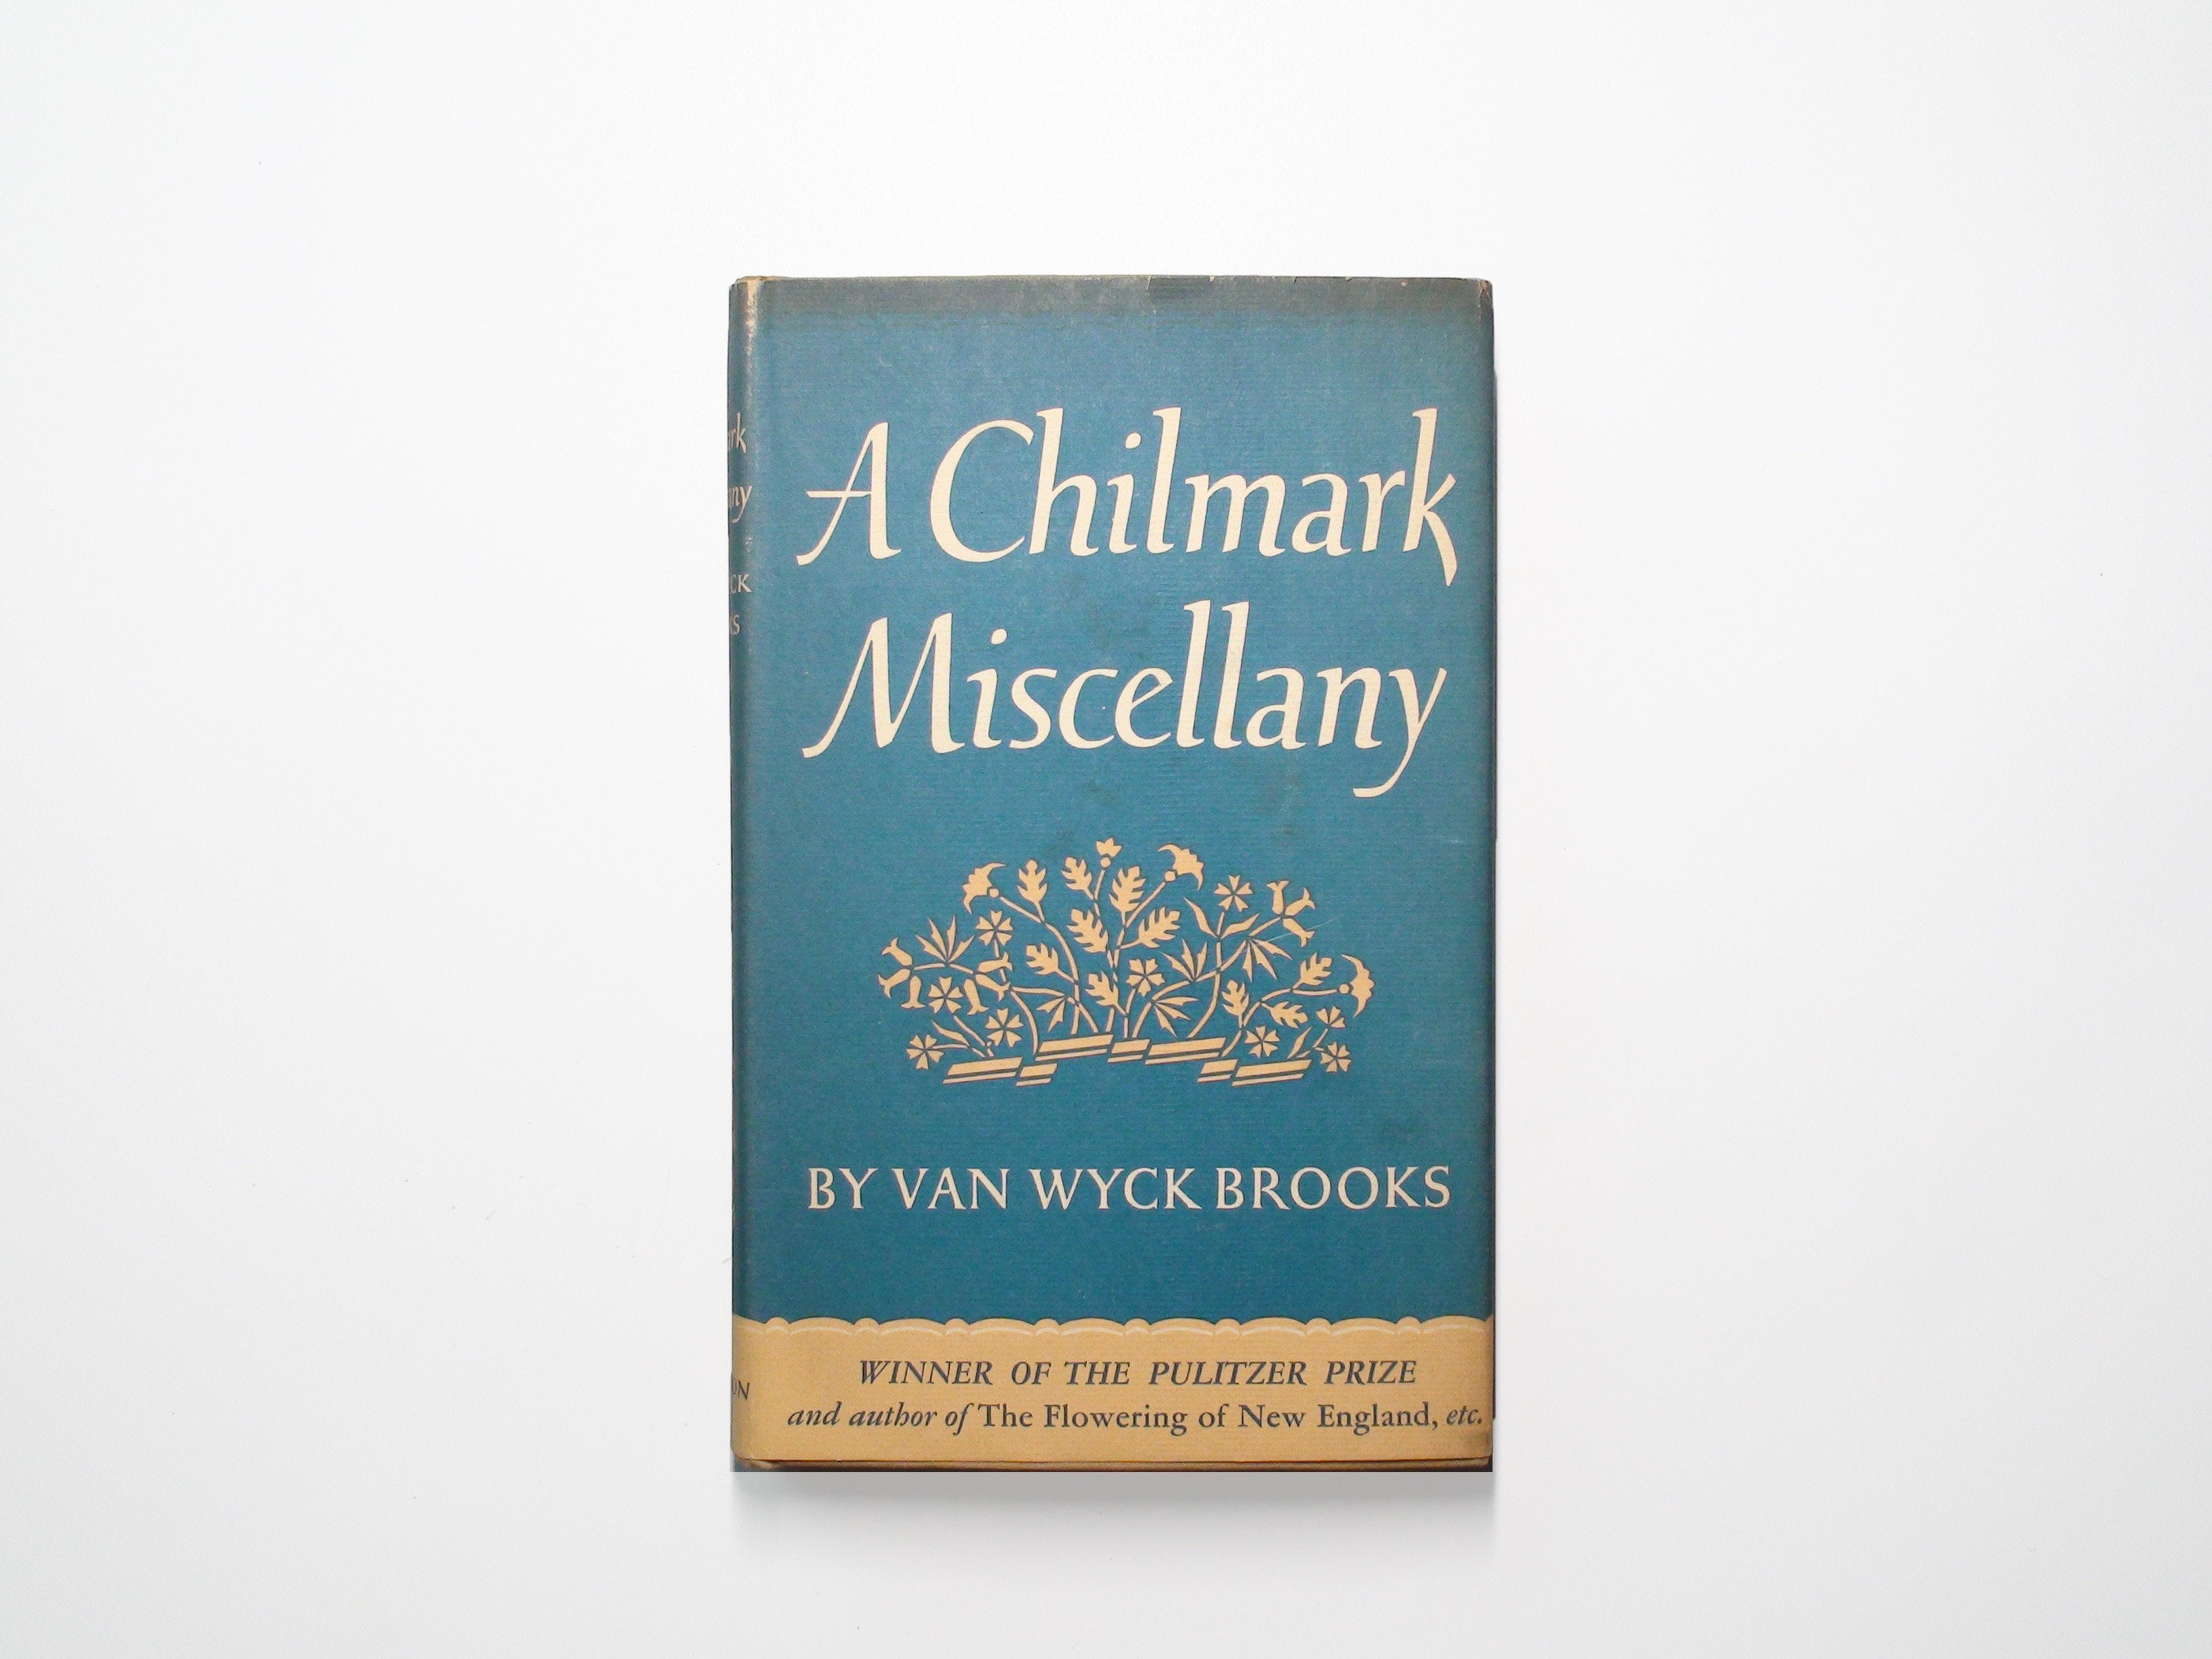 A Chilmark Miscellany, Van Wyck Brooks, 1st Ed, w DJ, 1948